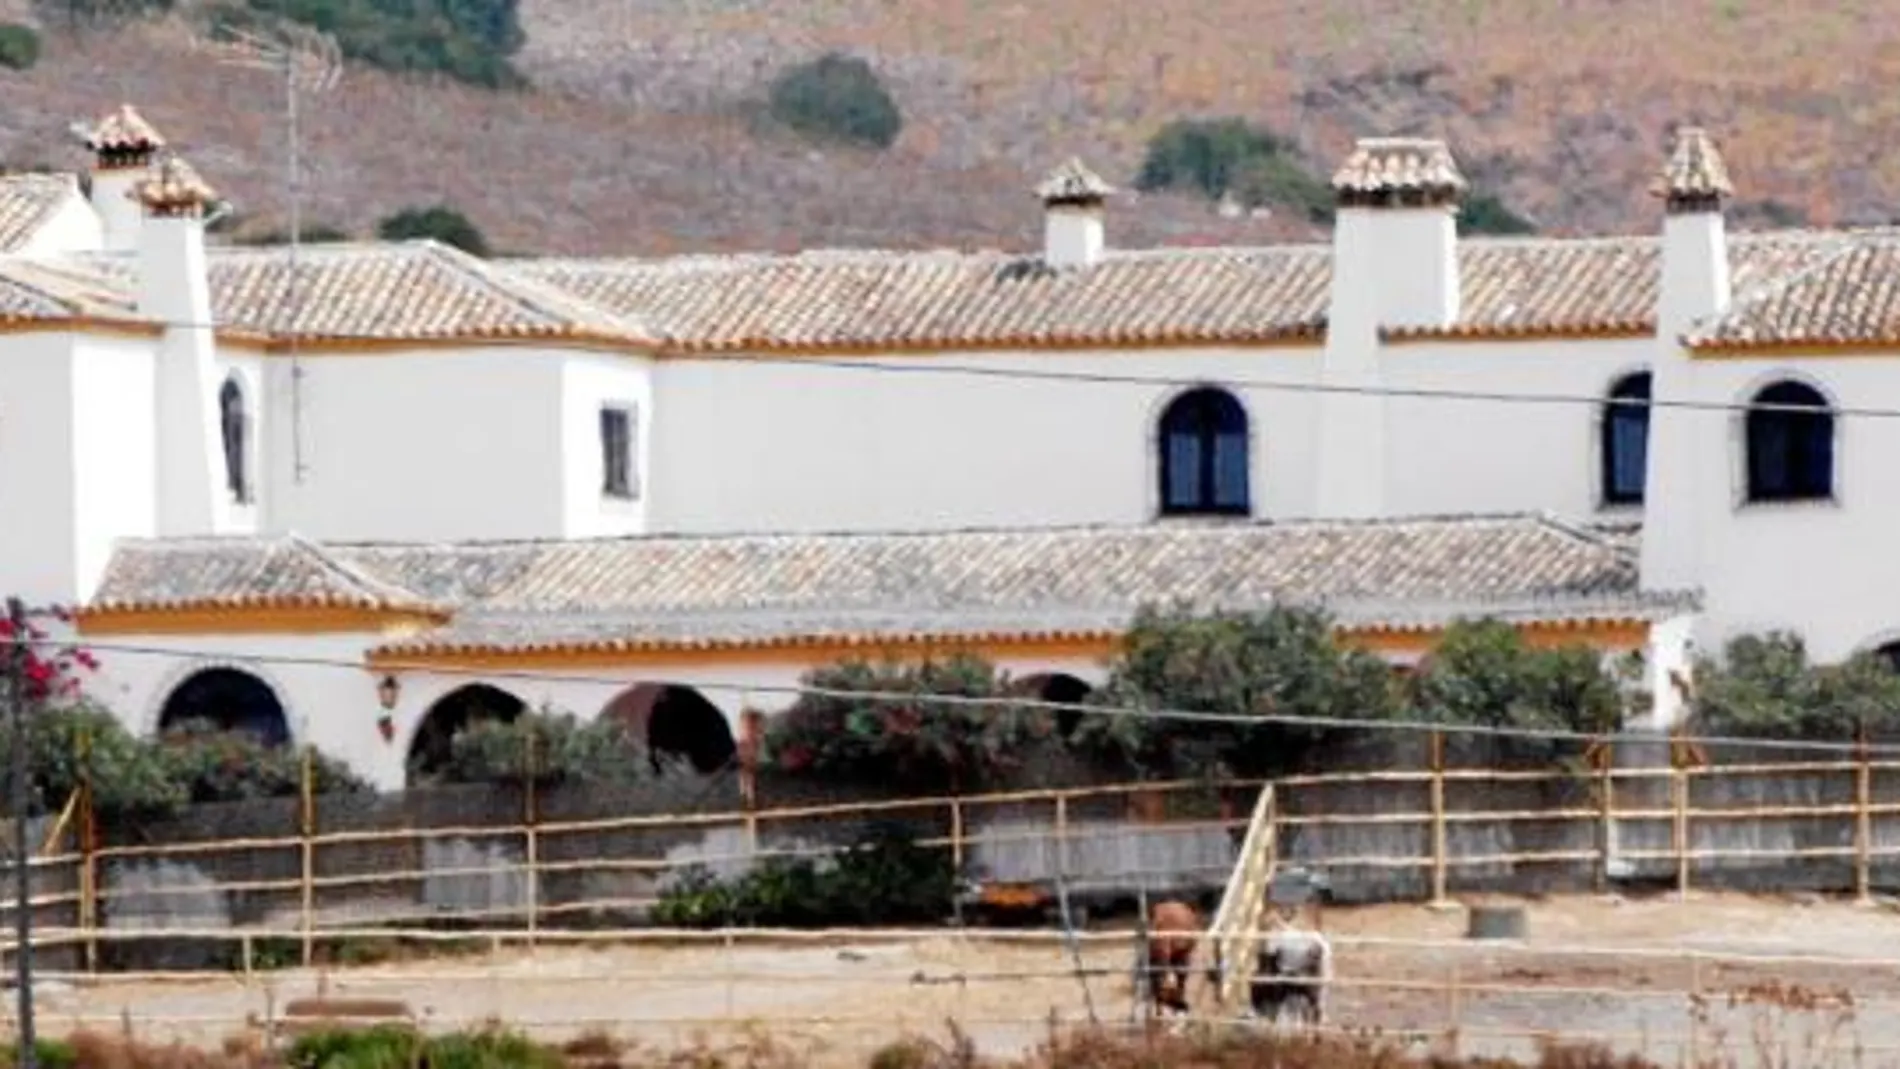 La propiedad está situada entre Barbate y Medina-Sidonia (Cádiz), entre zonas de monte, dehesa y cultivo, y, además de la casa principal, tiene piscina y cuadras.